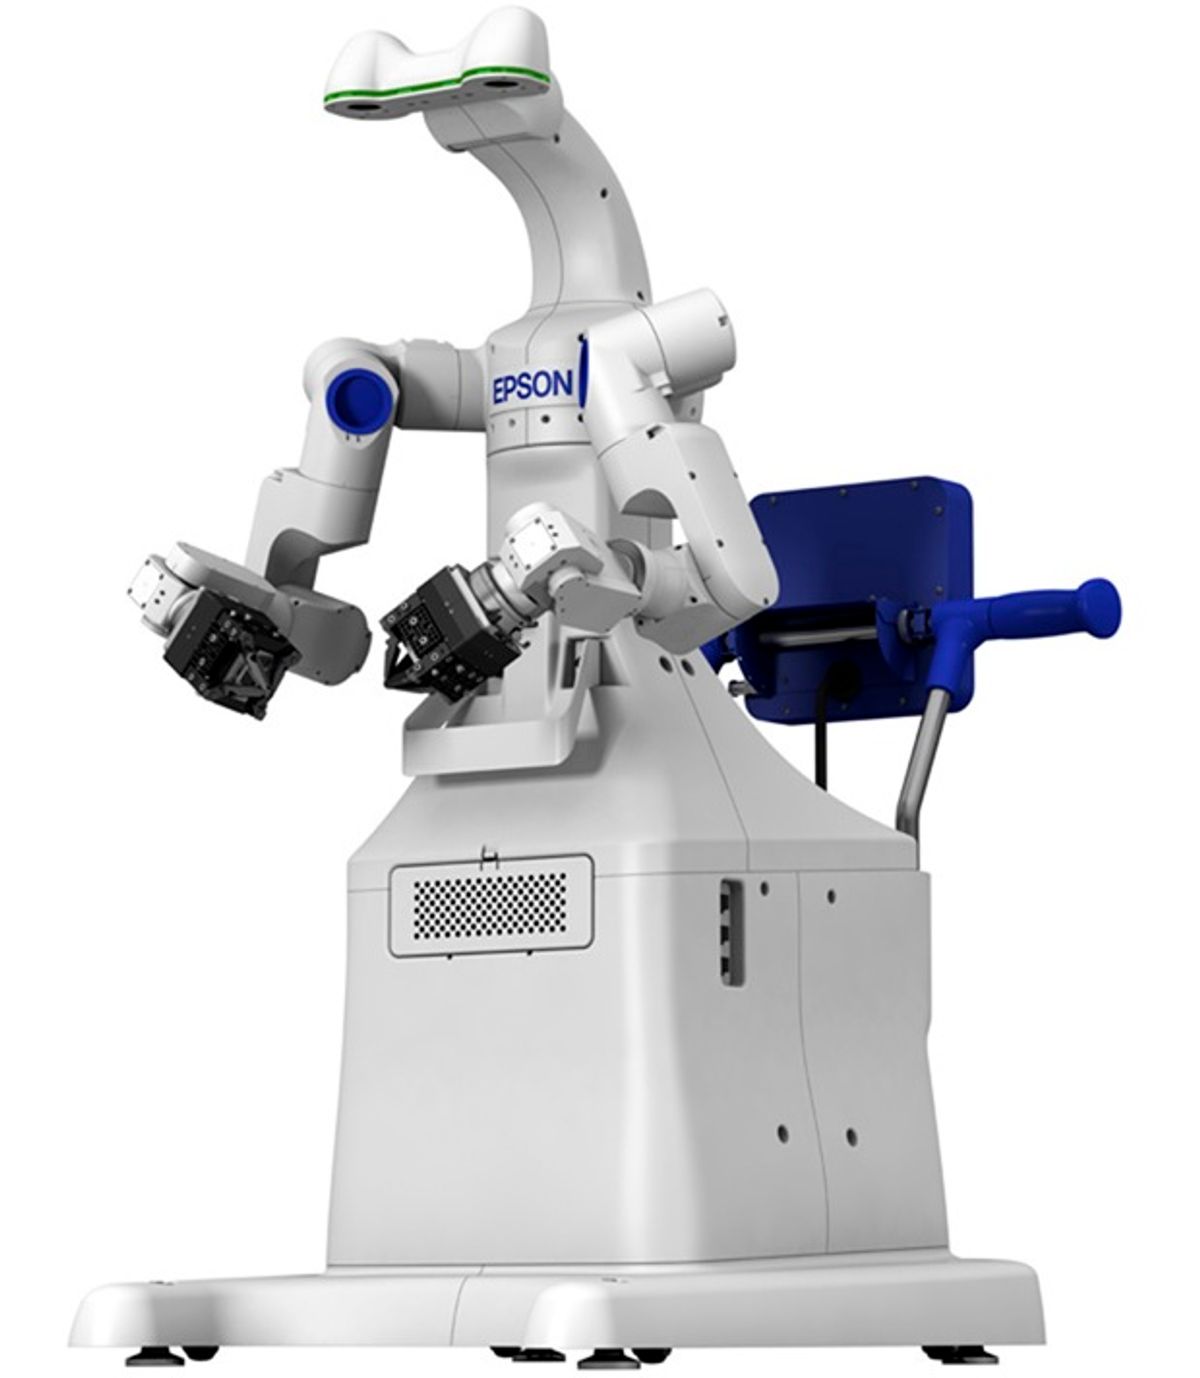 Seiko Epson dual-arm robot